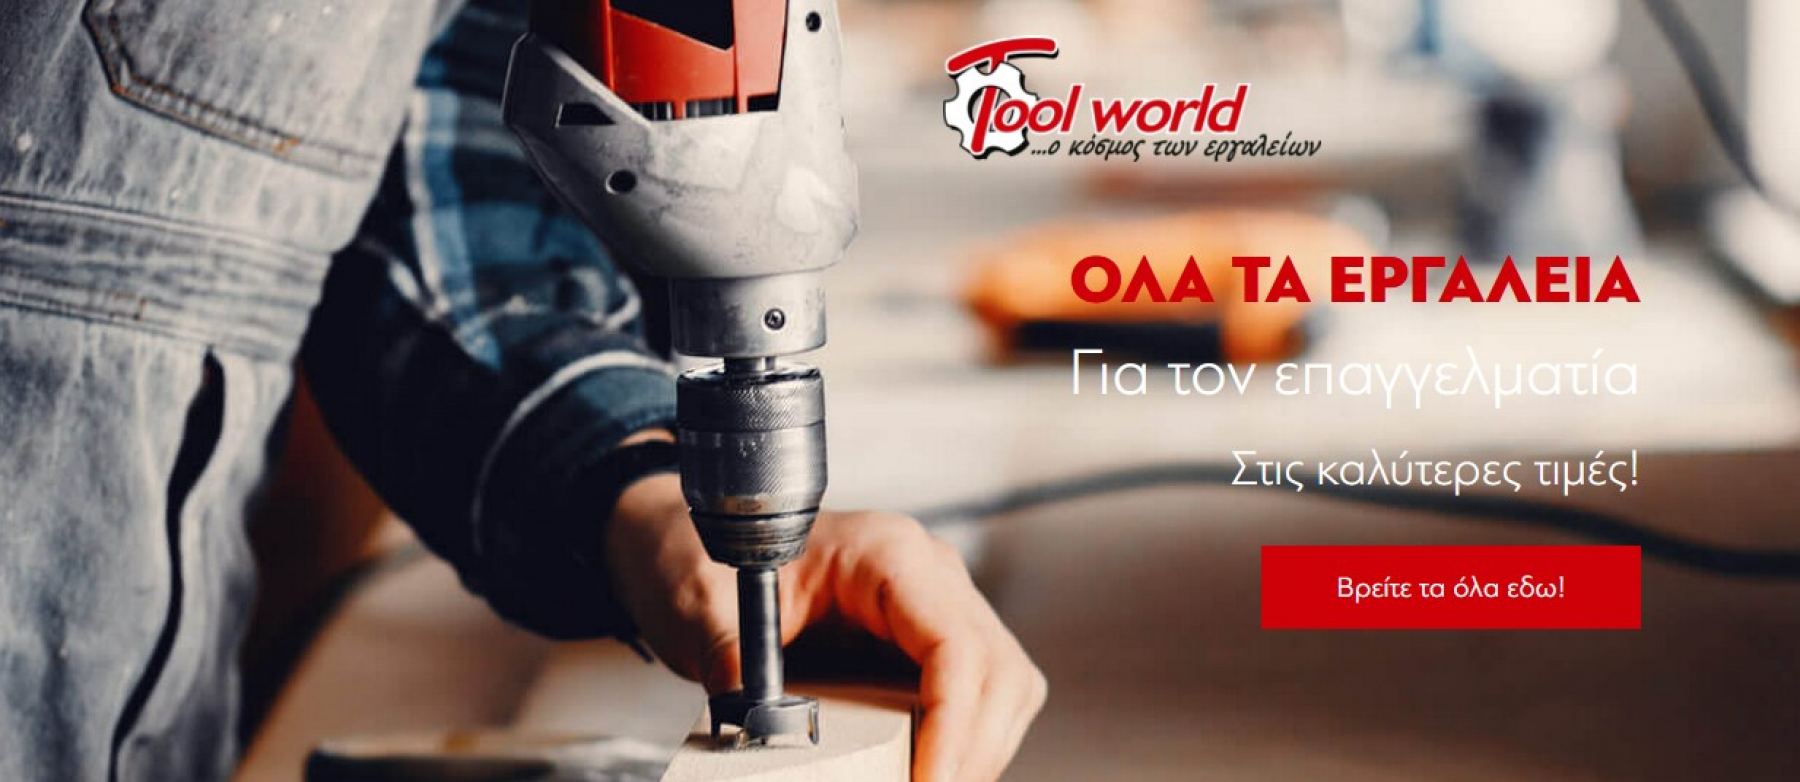 Tool-world.gr: Το νέο eshop που θα σε εξοπλίσει για τα καλά!